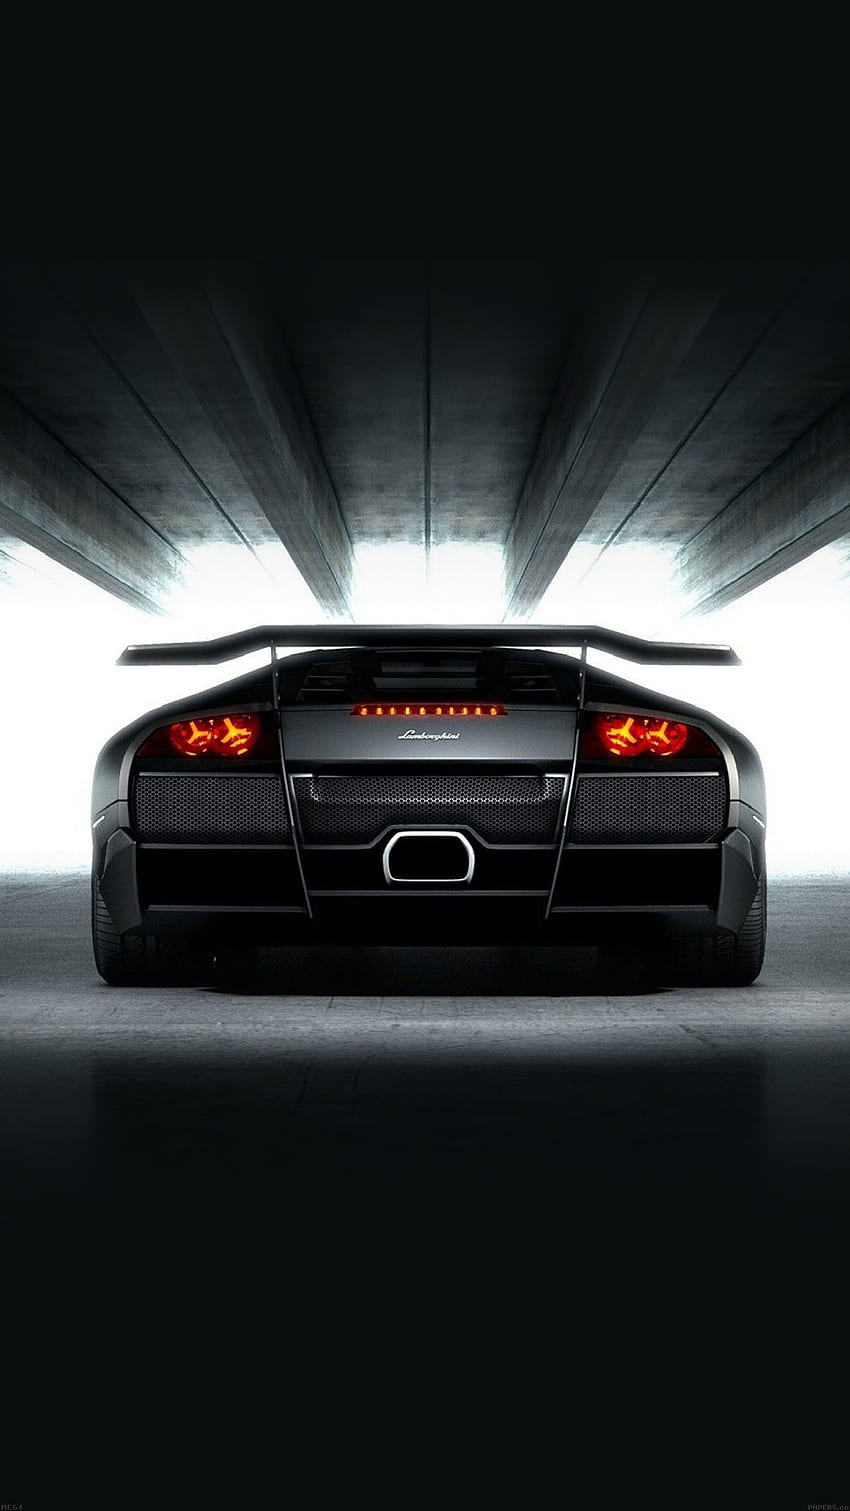 ââTAP AND GET THE APP! Car Speed Black Porche For Man Â· App BackgroundsCar Iphone 6 LamborghiniMotorcyclesGarage HD phone wallpaper